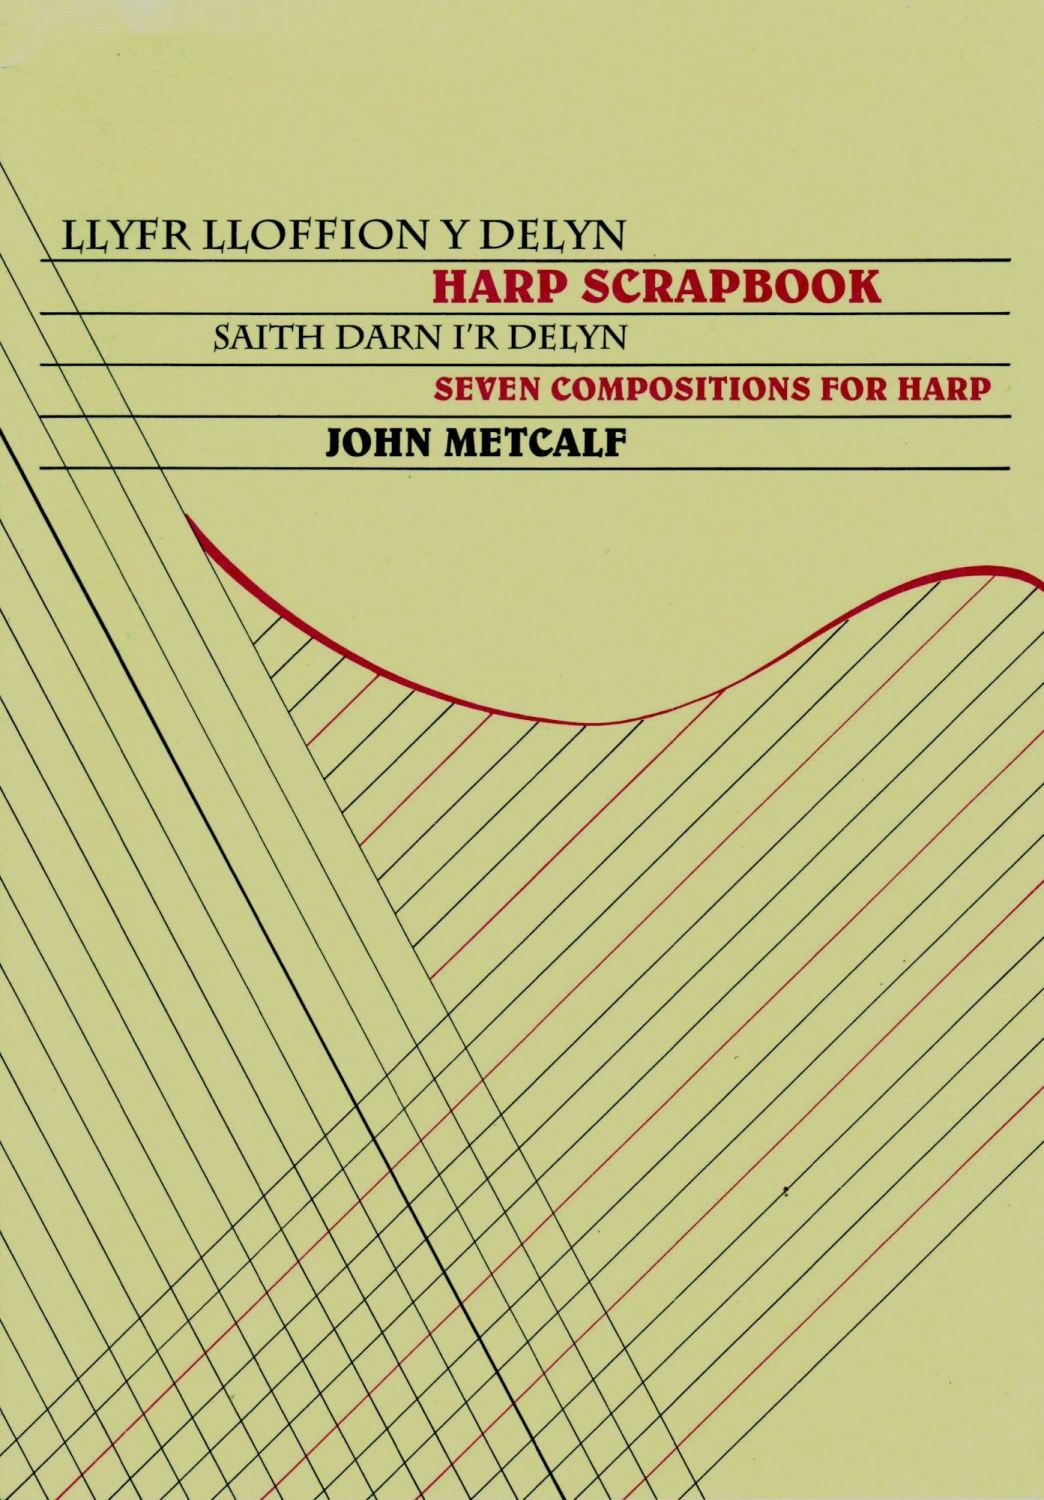 Harp Scrapbook - Llyfr Lloffion Y Delyn - John Metcalf